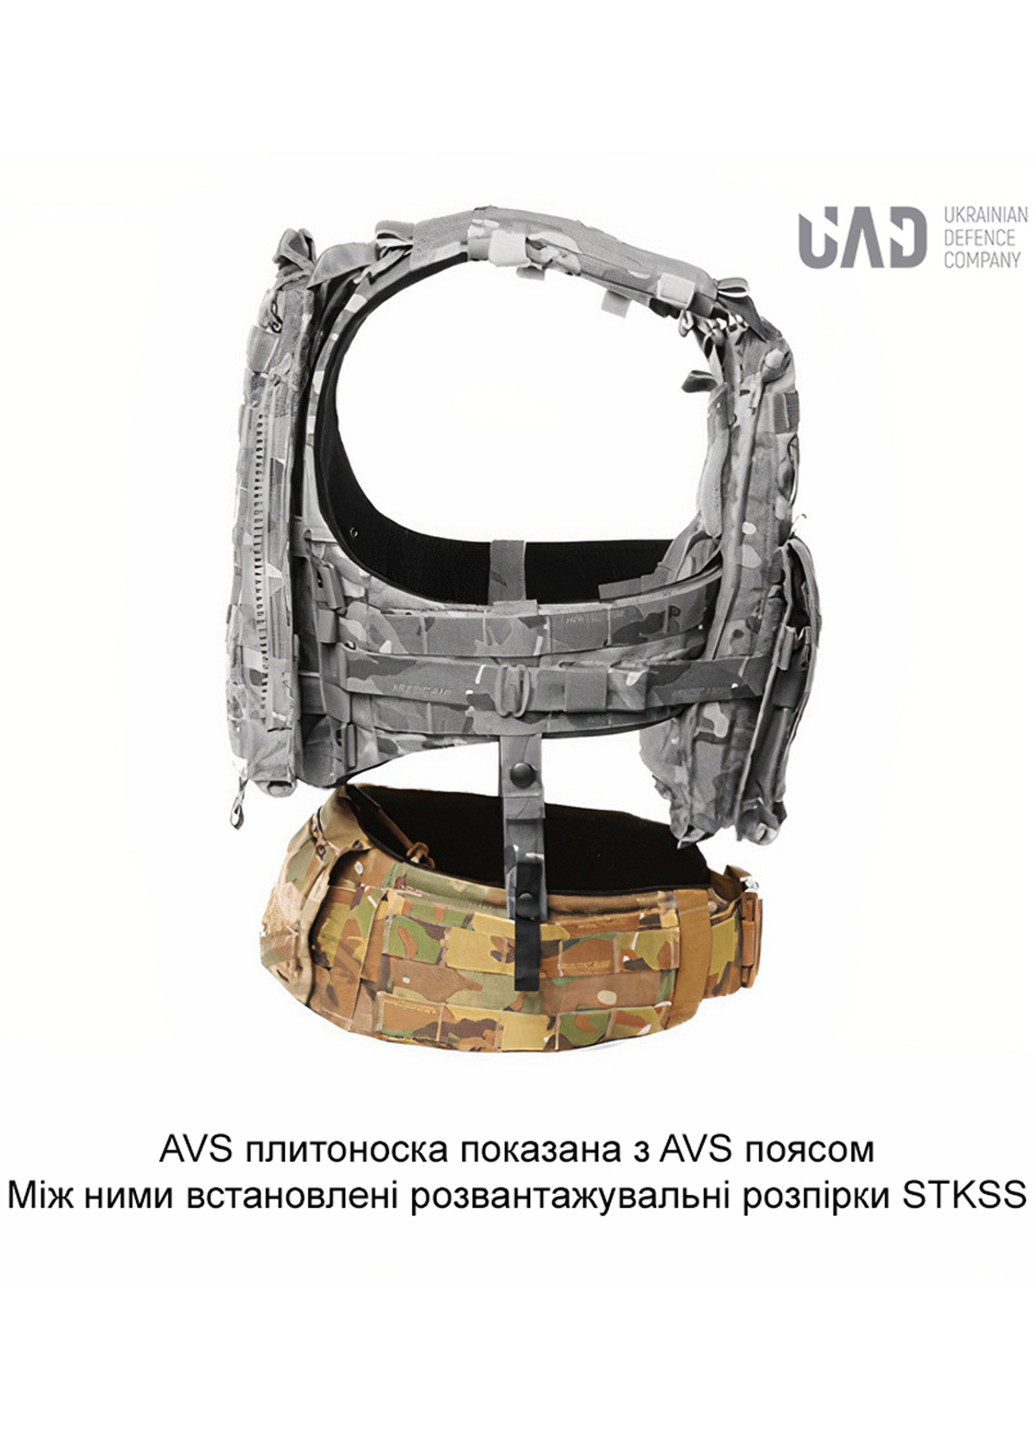 Комплект Плитоноска AVS + Пояс AVS + Система поддержки спины + Панель-рюкзак + Боковая защита Койот Emerson (258760475)